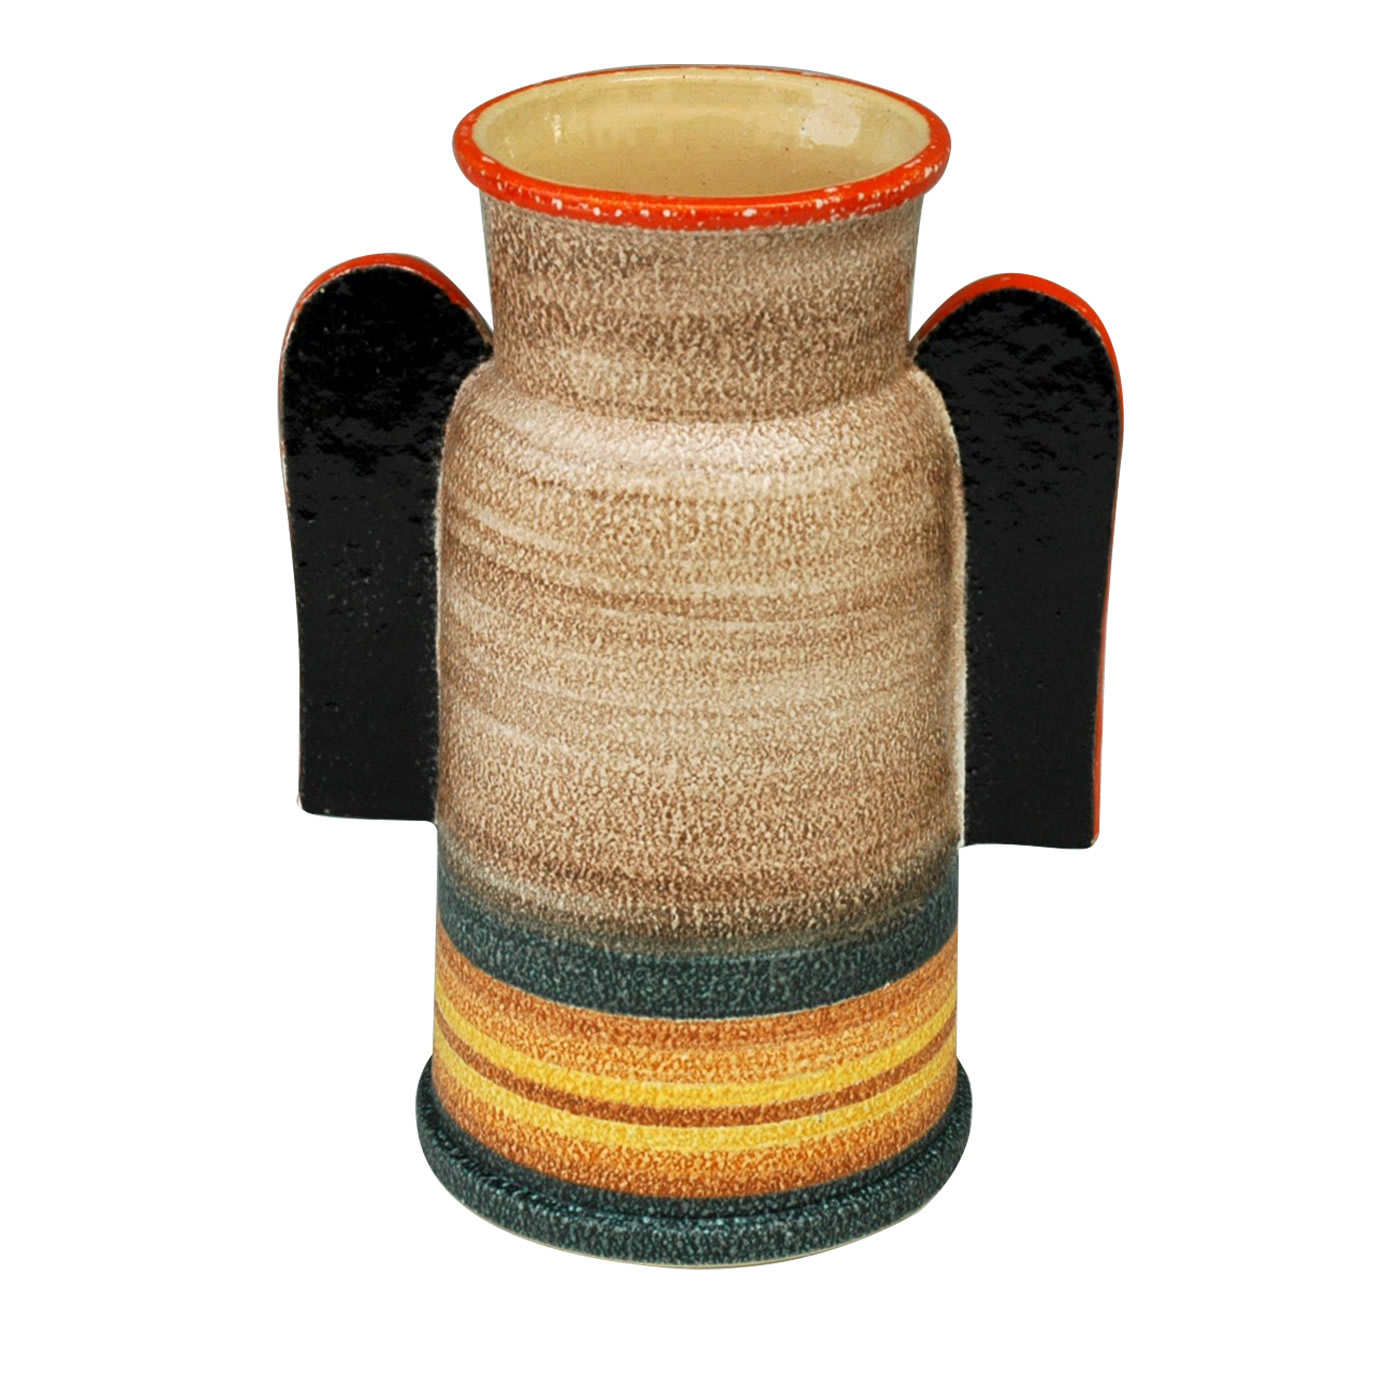 Littorio Ceramic Vase - Mazzotti 1903